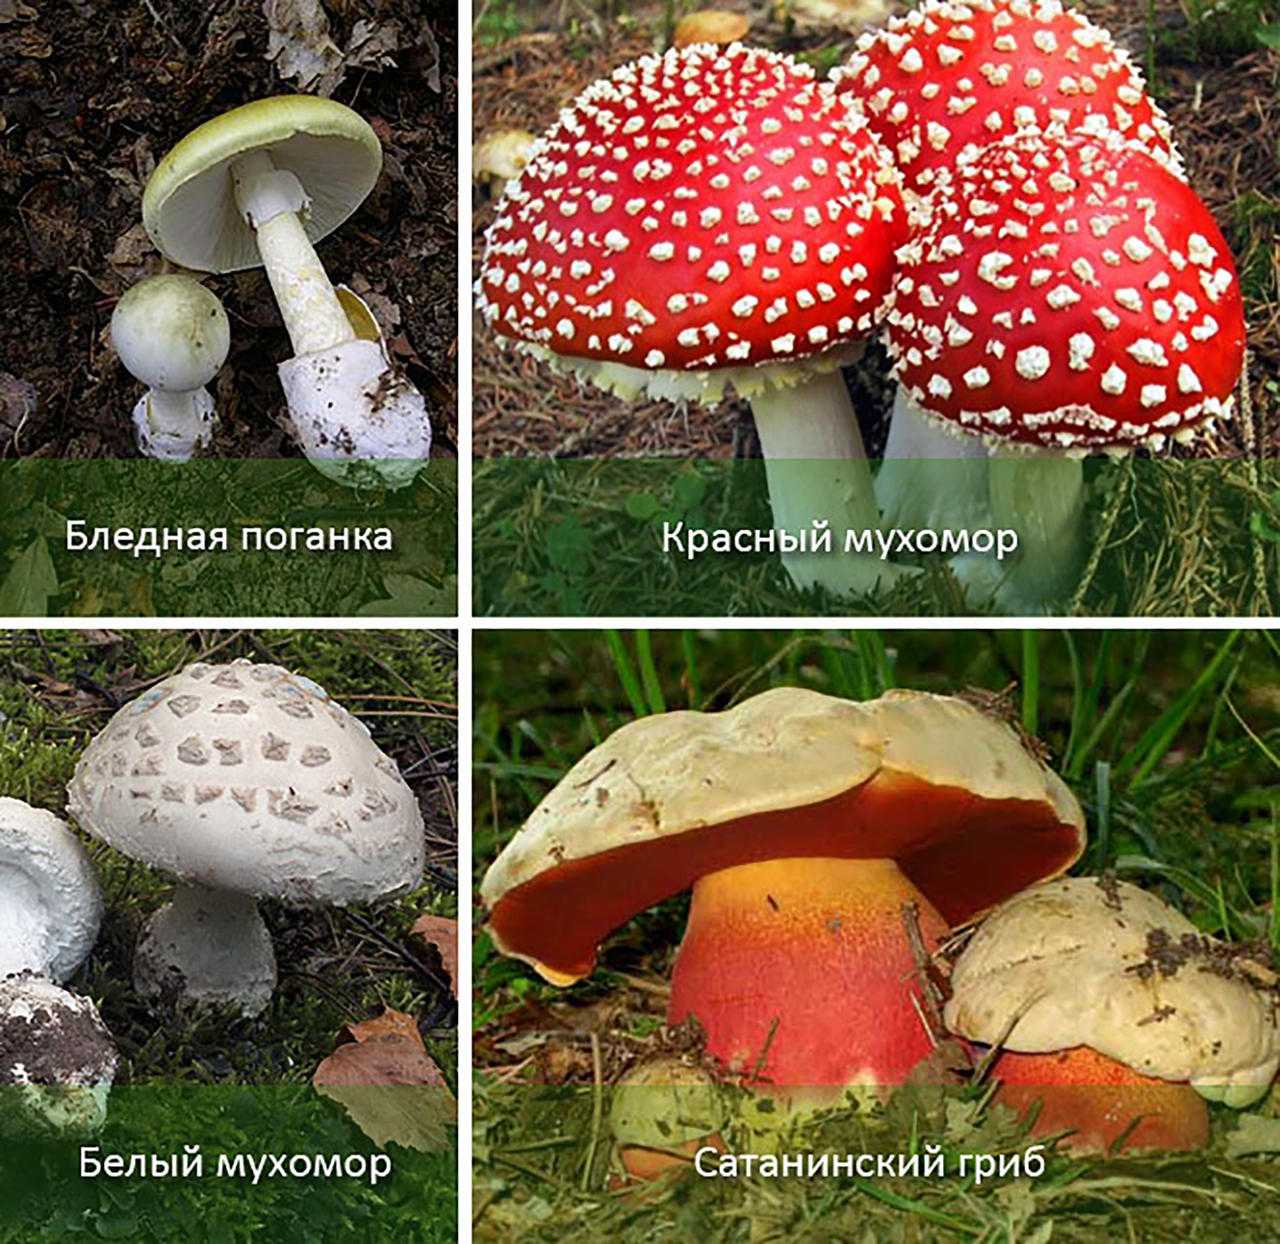 Какие есть грибы несъедобные. Несъедобные и ядовитые грибы. Бледная поганка и красный мухомор фото. Название ядовитых грибов. Картинки ядовитых грибов с названиями.